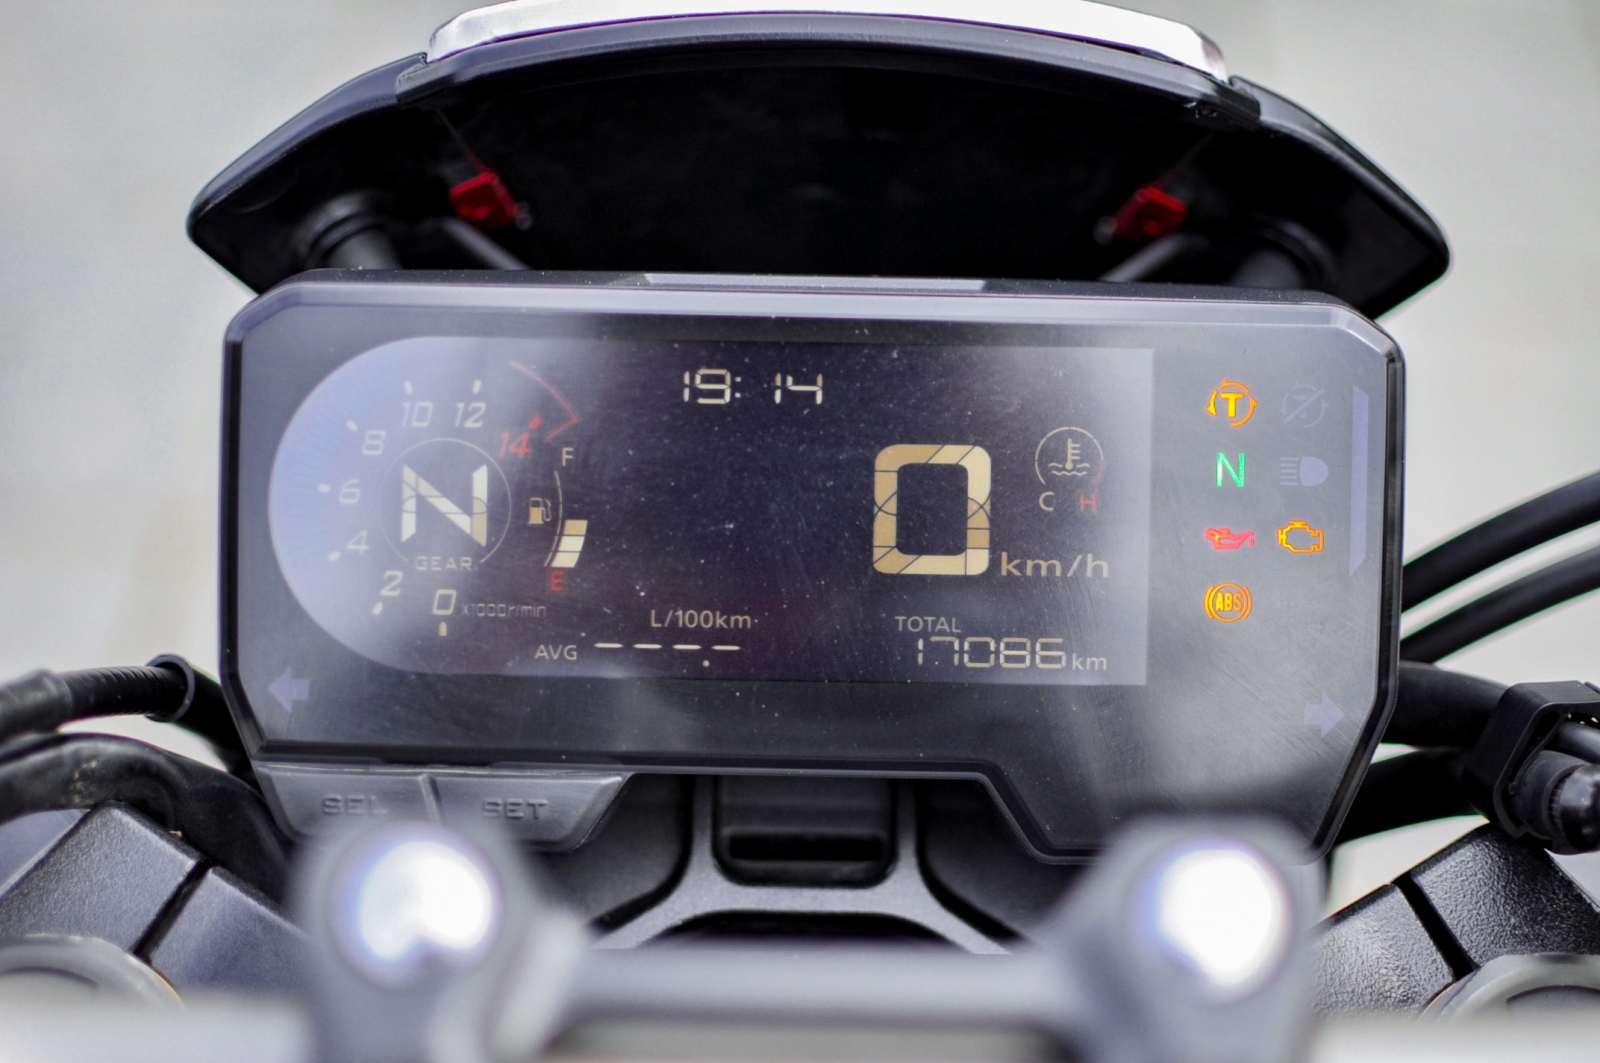 Honda CB650R 2020 